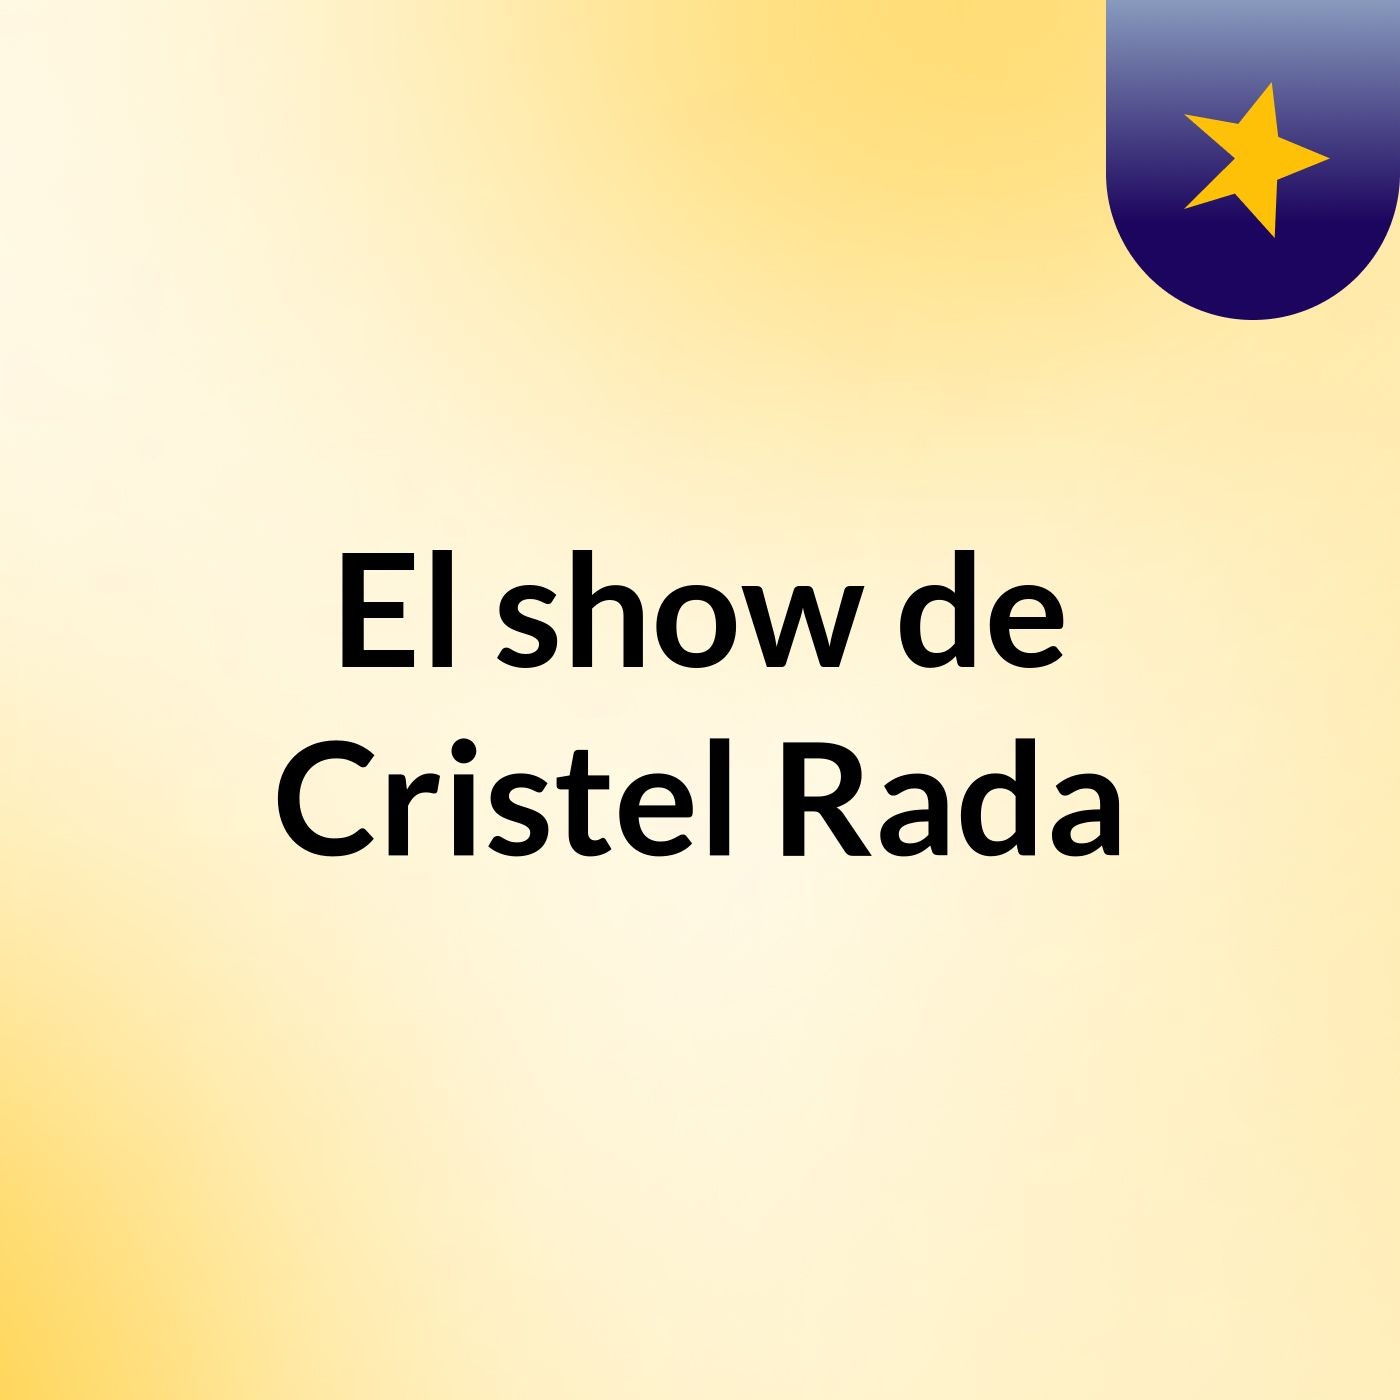 El show de Cristel Rada